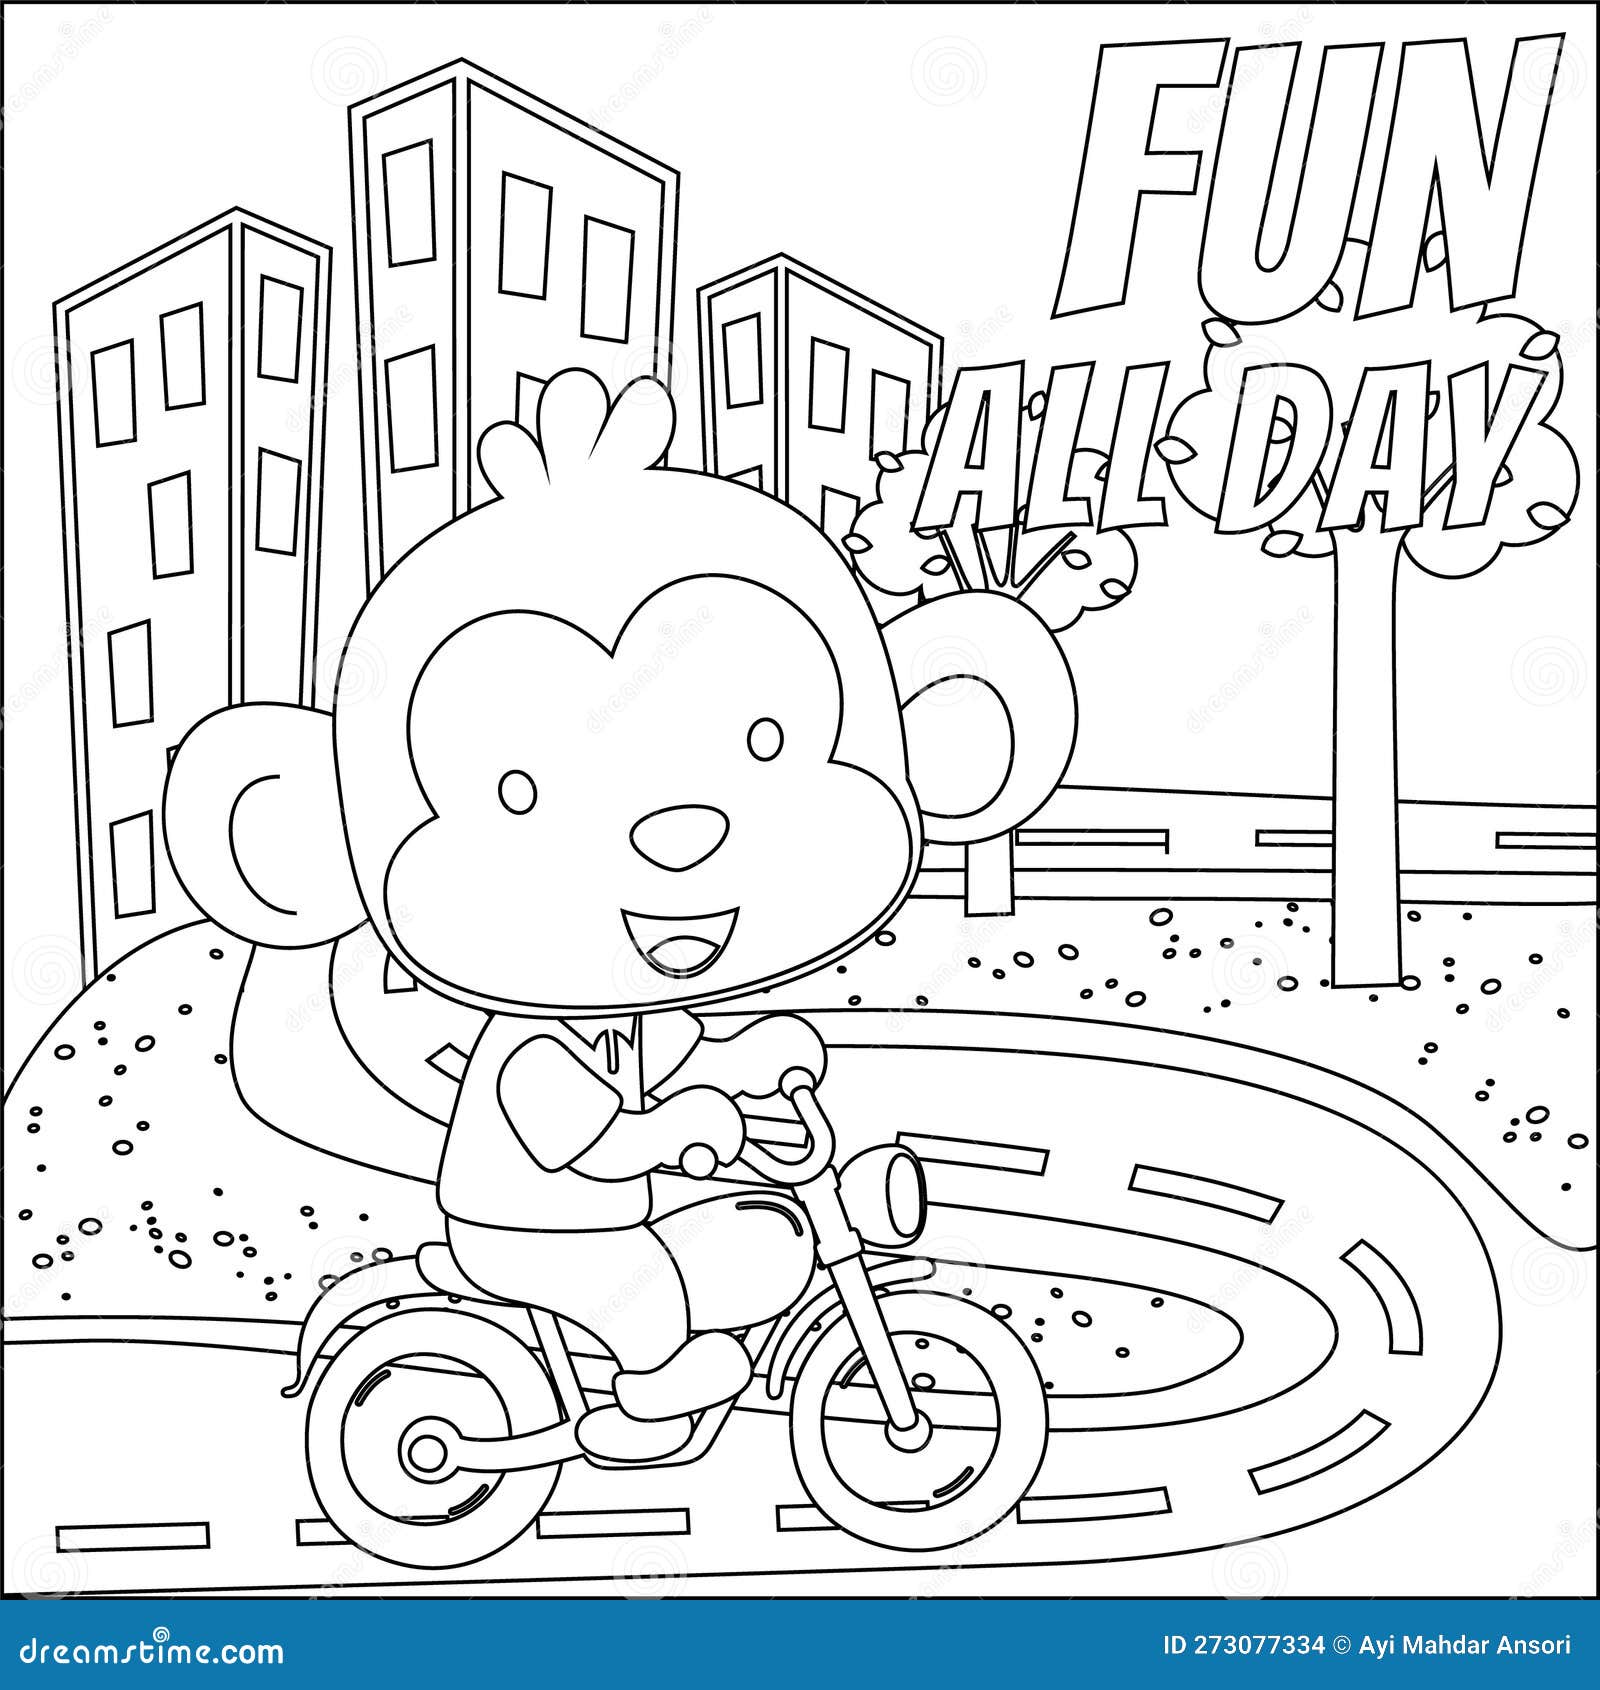 Vetores e ilustrações de Moto infantil para download gratuito